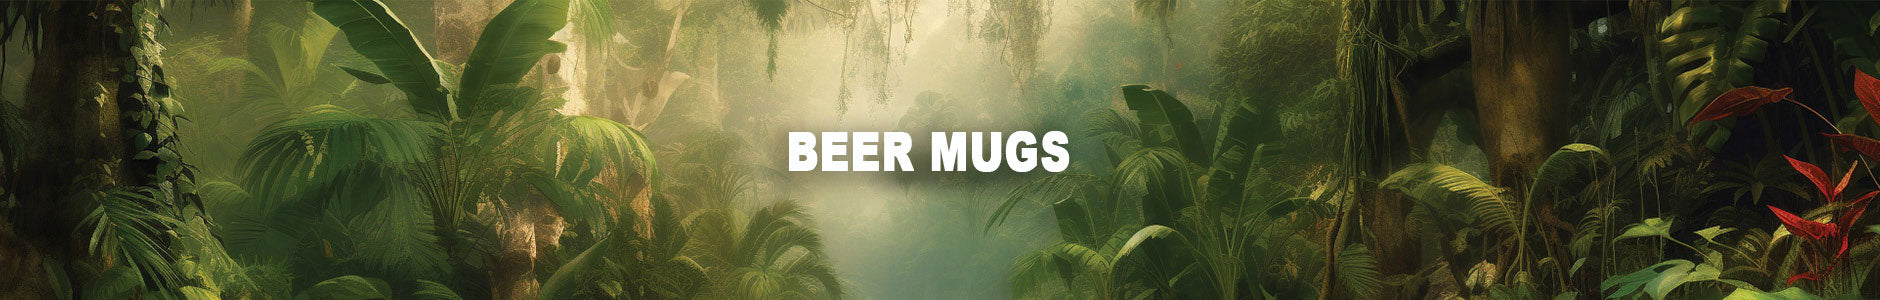 Beer Mugs